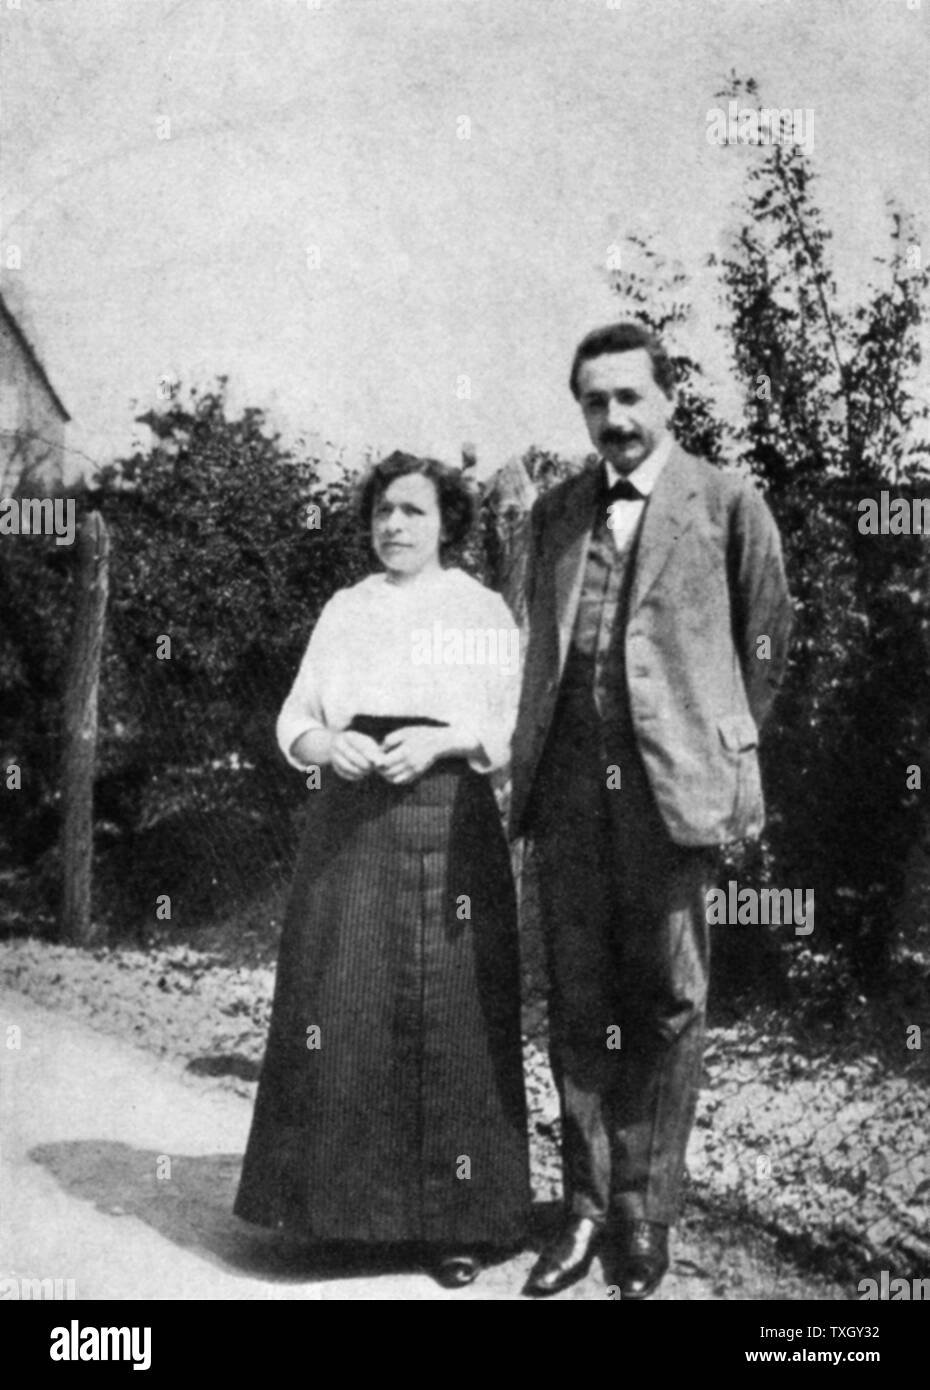 Albert Einstein (1879-1955) deutsch-schweizerische Mathematiker, Relativität c 1905 Einstein mit seiner ersten Frau Mileva Stockfoto